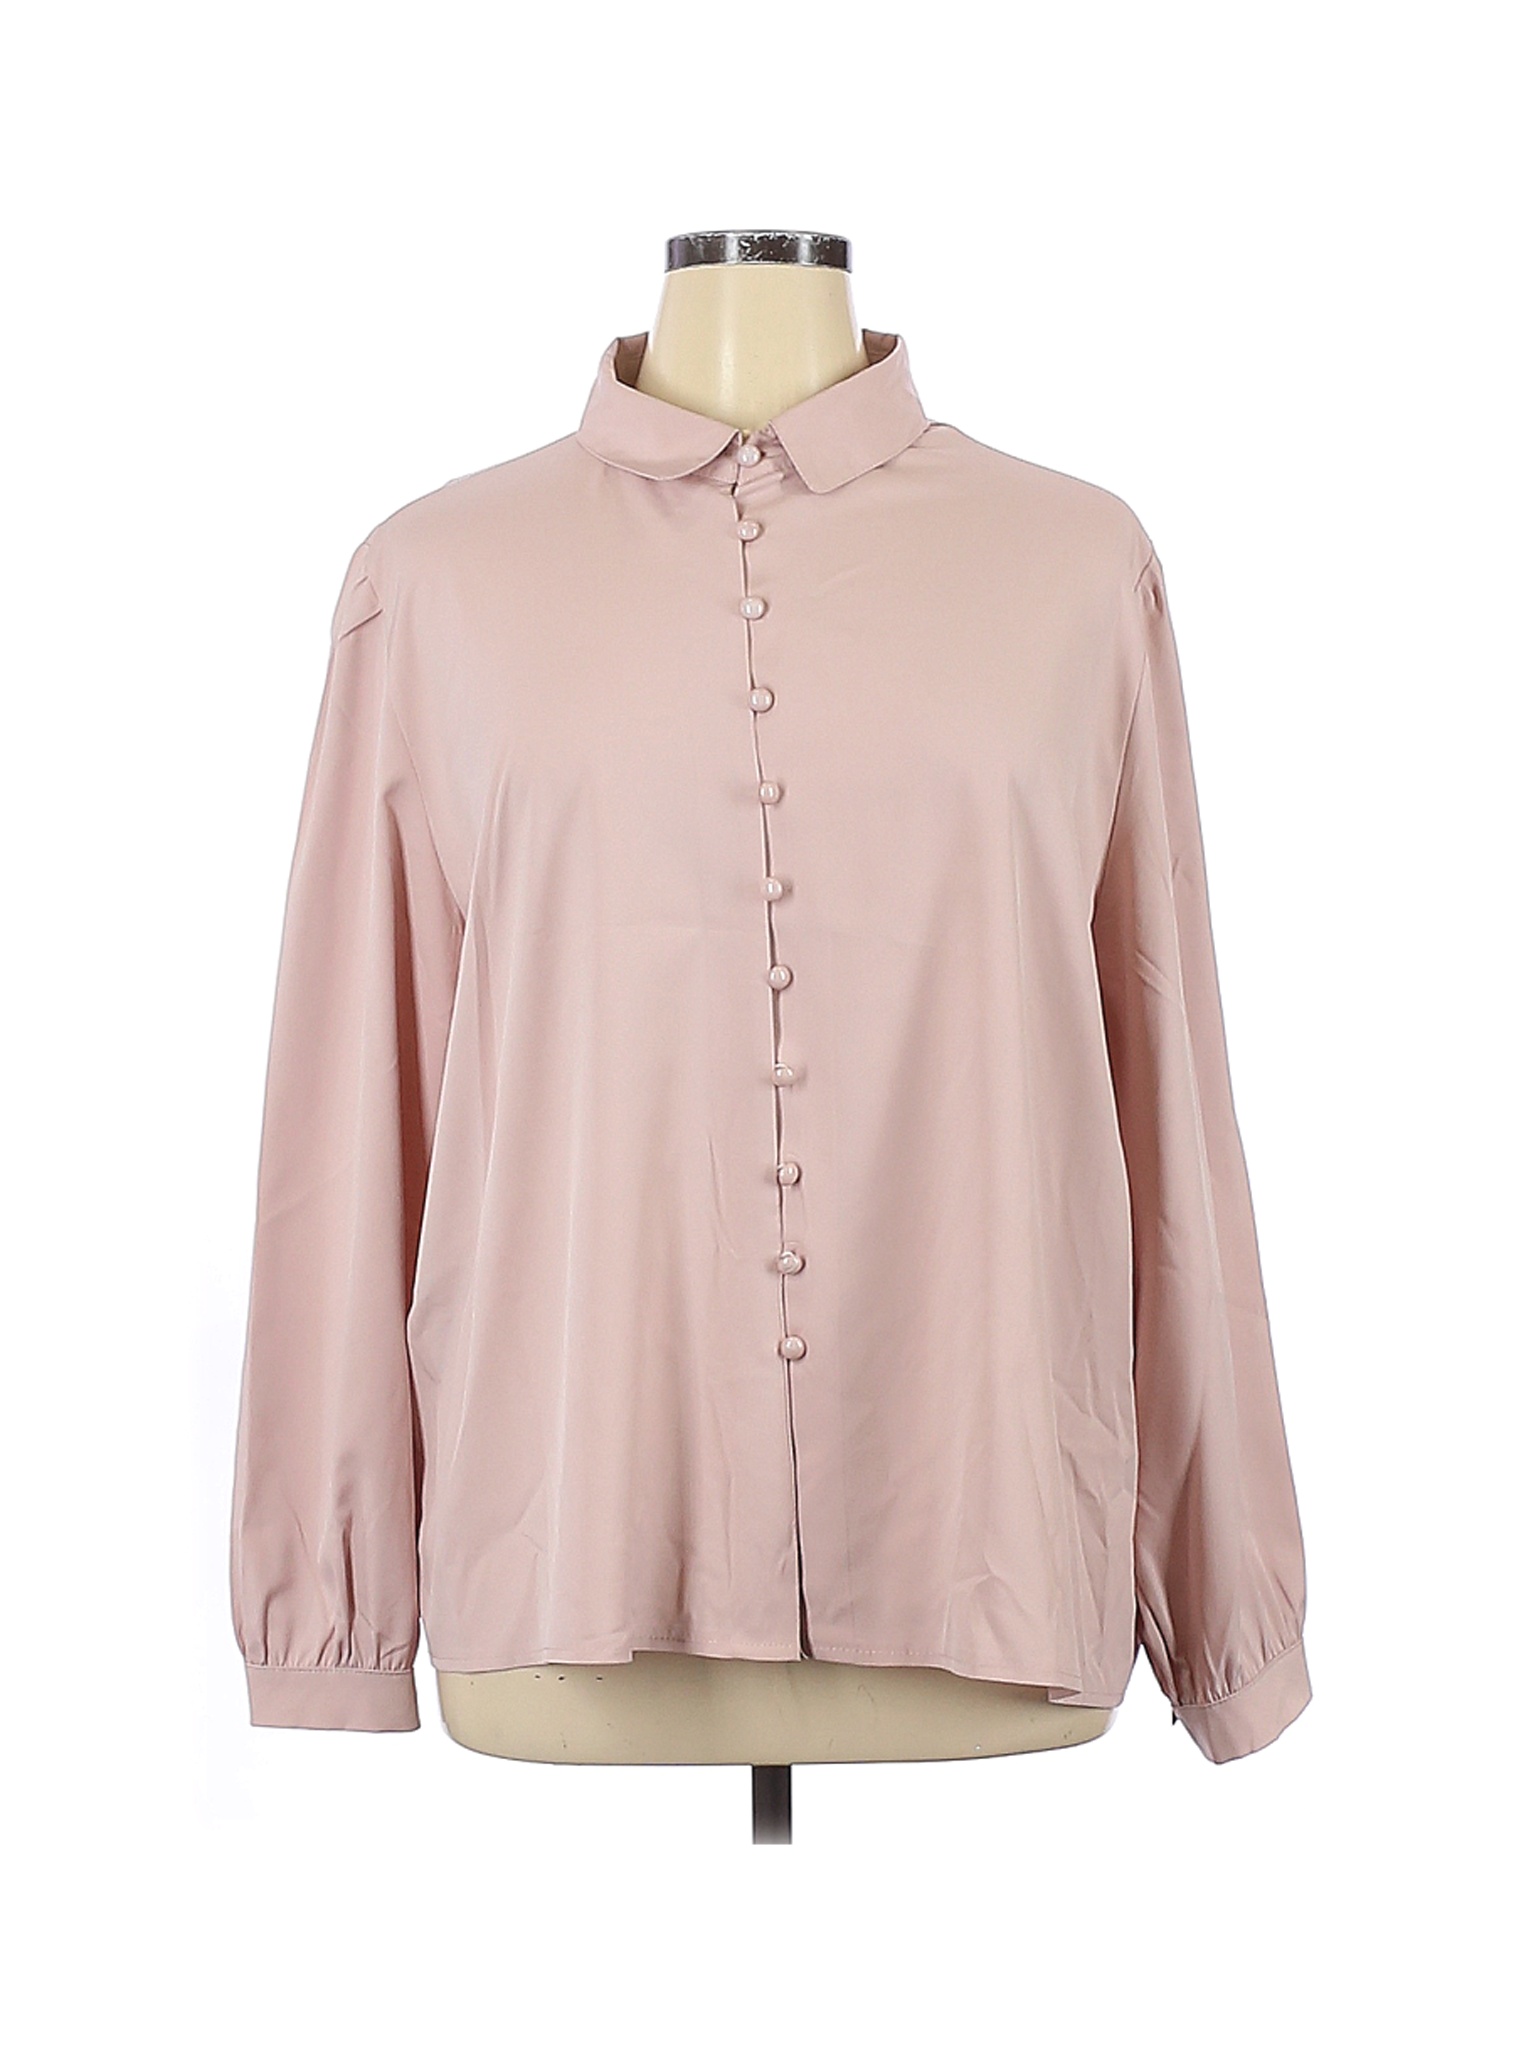 Zanzea Collection Women Pink Long Sleeve Blouse 5X Plus | eBay